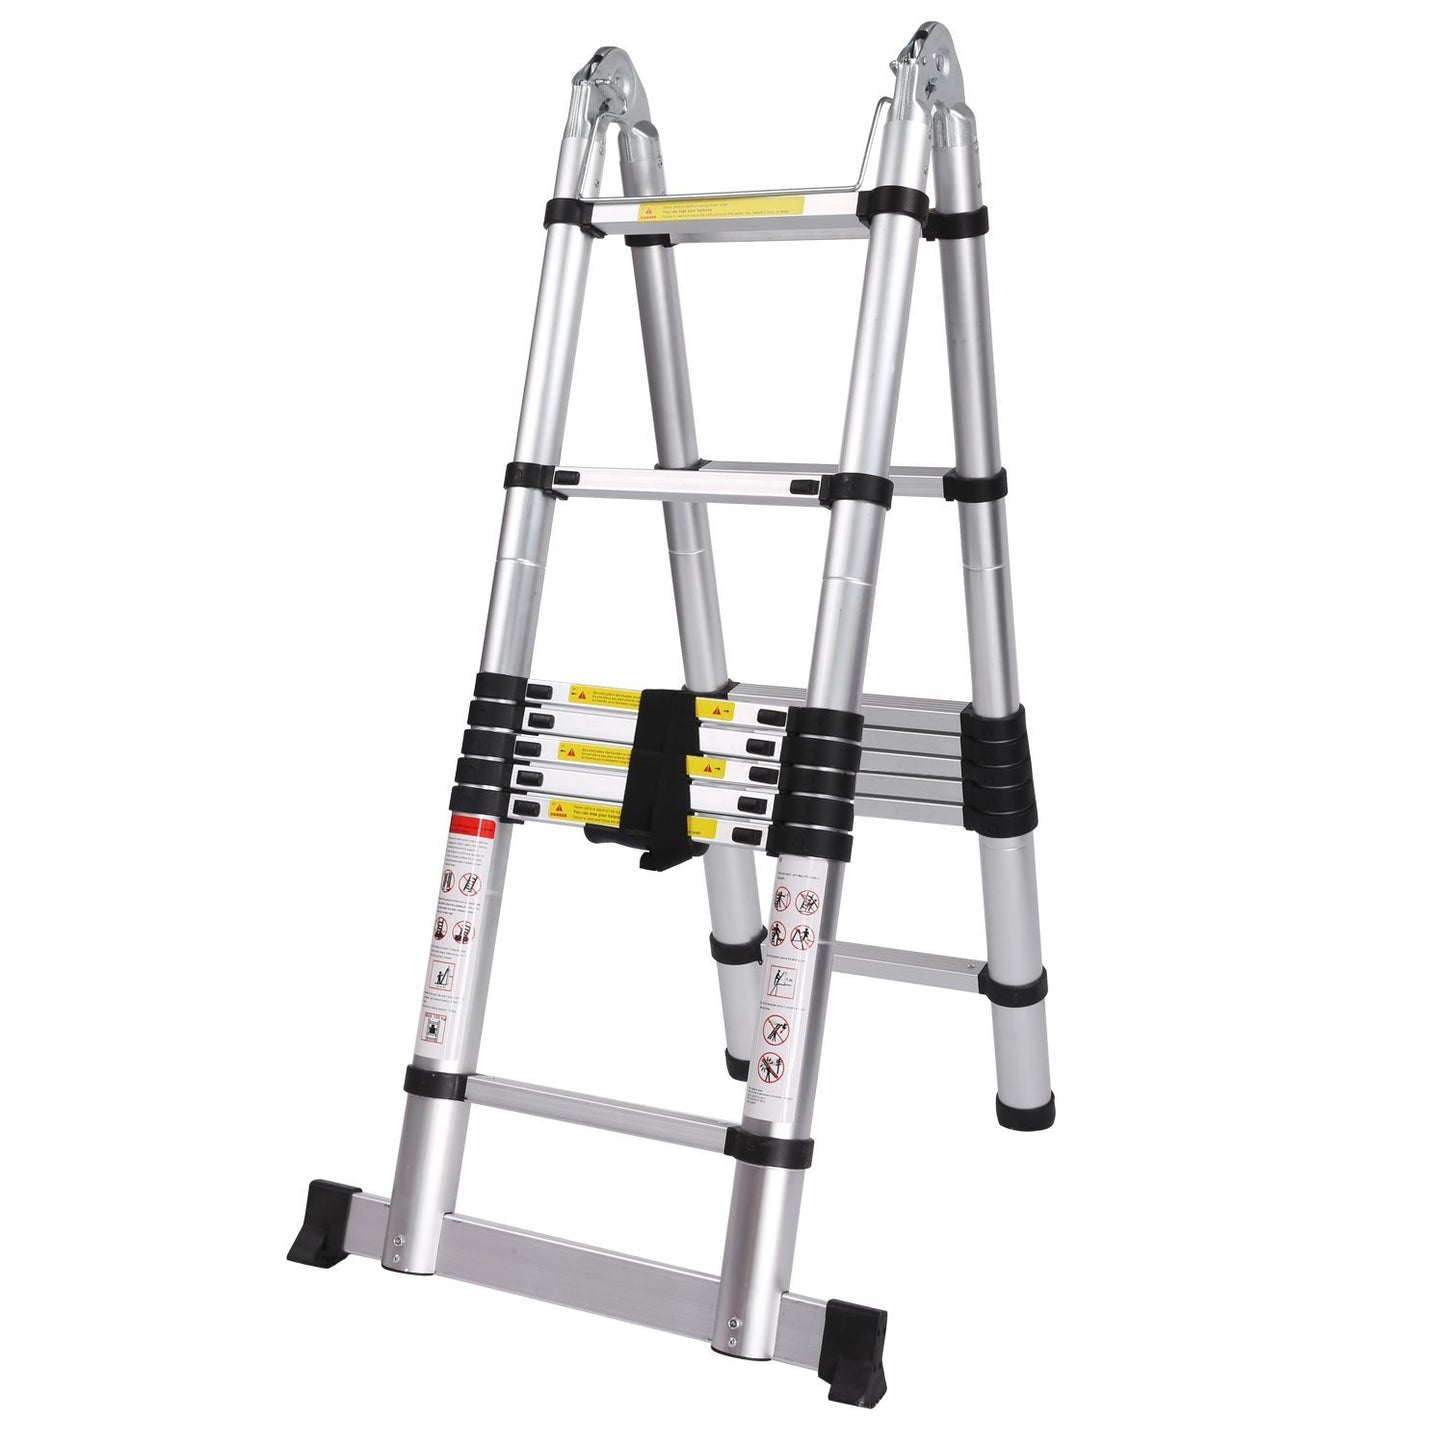 AL Ladder, Telescopische ladder 18 treeds 2.8m+2.8m=5.6m- Inklapbaar - Werkhoogte 5.6m,Silver